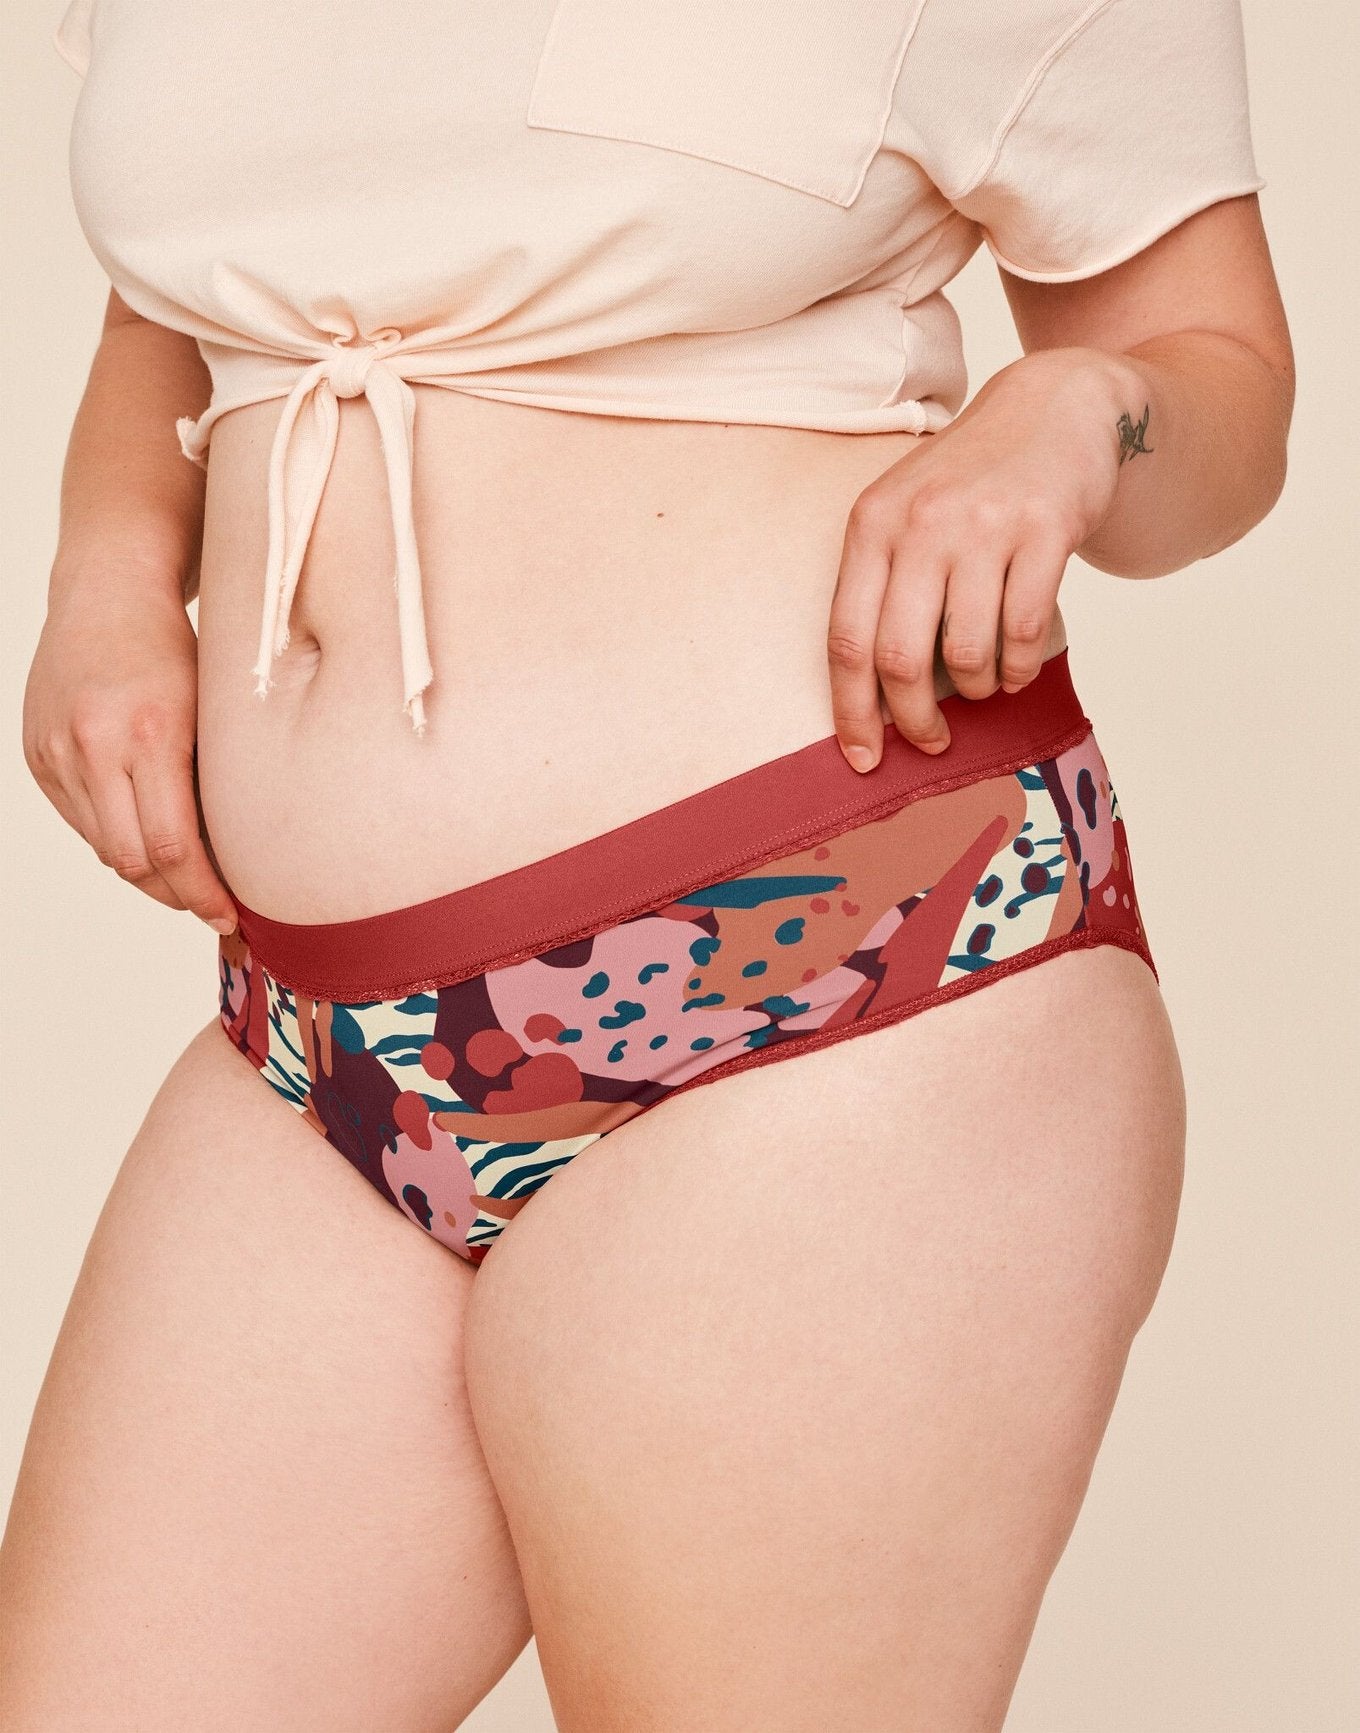 8 Pairs X Bonds Womens Seamless Full Brief Underwear Beige - Onceit